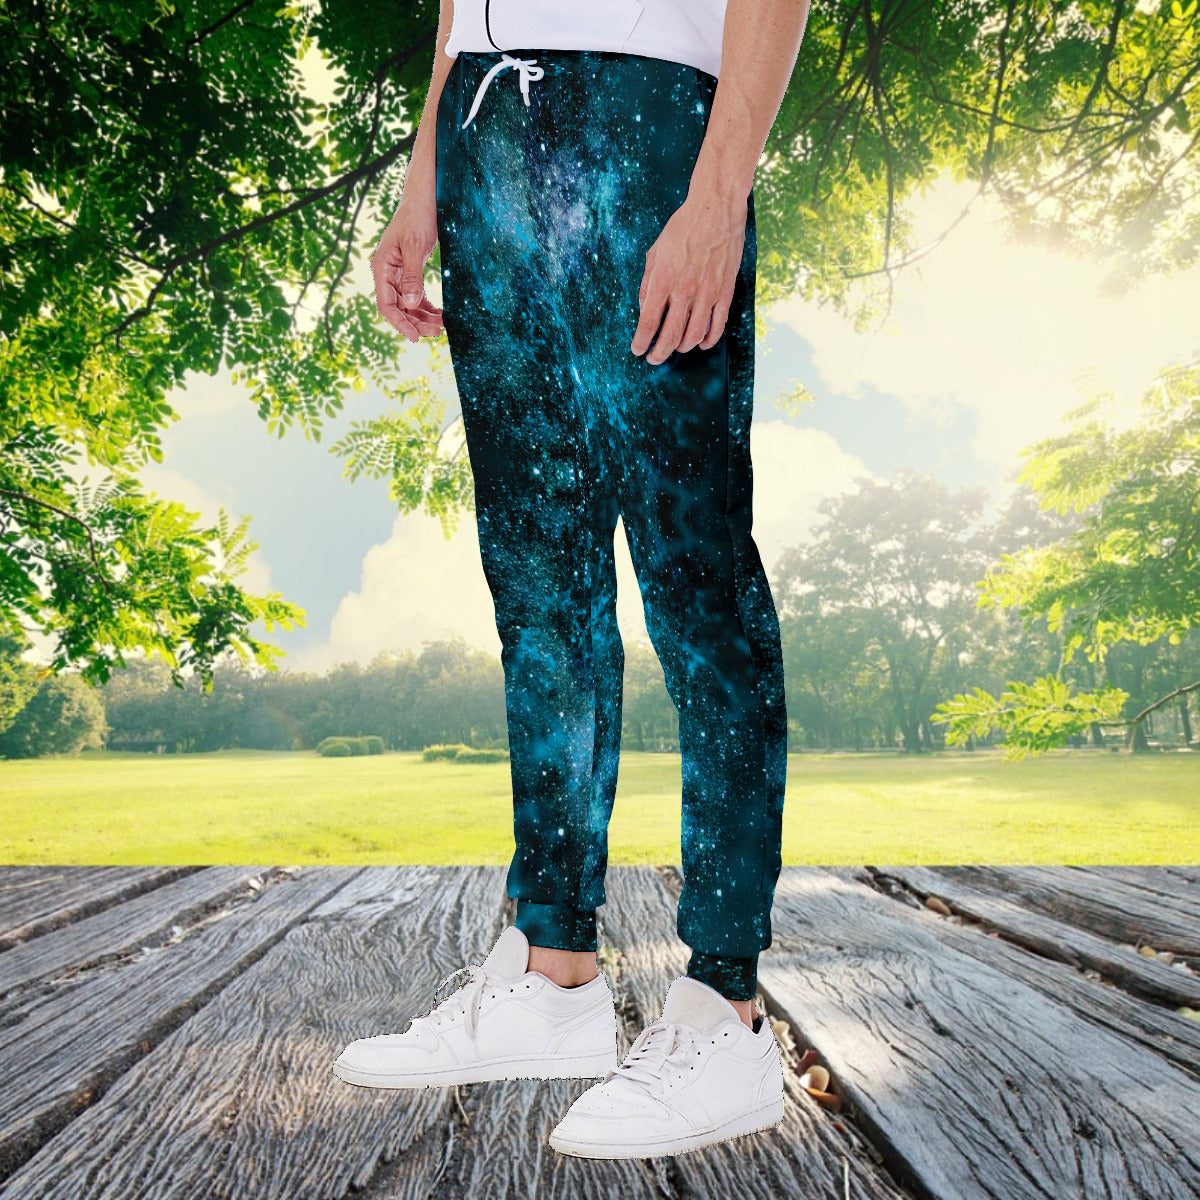 My Journey Nebula Galaxy Space Print Men's Fashion Sweatpants The Nebula Palace: Spiritually Cosmic Fashion